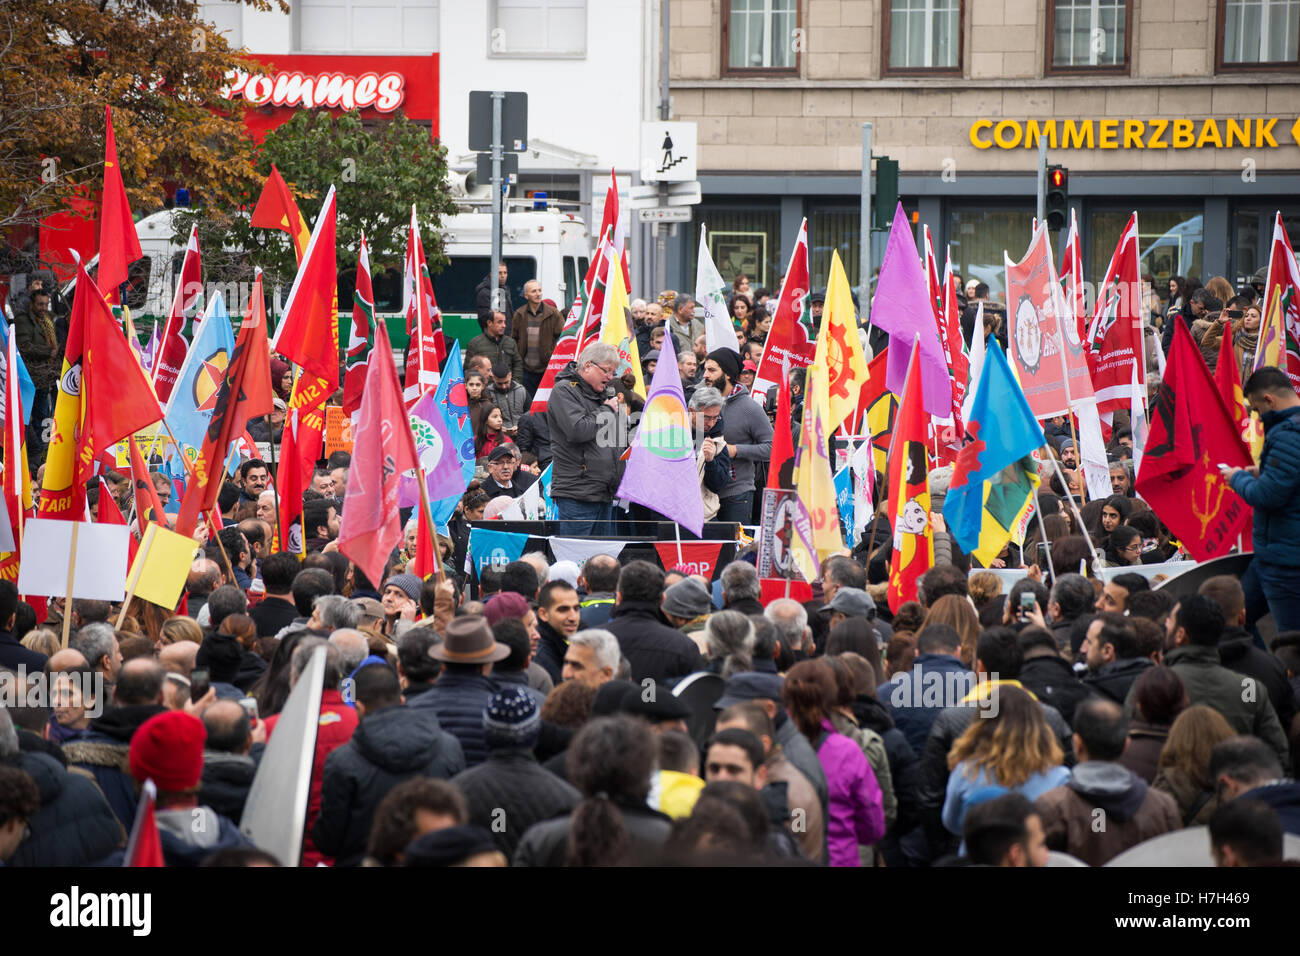 Colonia, Germania: 05, novembre 2016. Dimostrazione del popolo curdo contro la politica di Erdogan e i più recenti arresti di giornalisti in Turchia. Questa immagine mostra uno degli altoparlanti. Credito: Klaus Reinshagen/ Alamy Live News Foto Stock